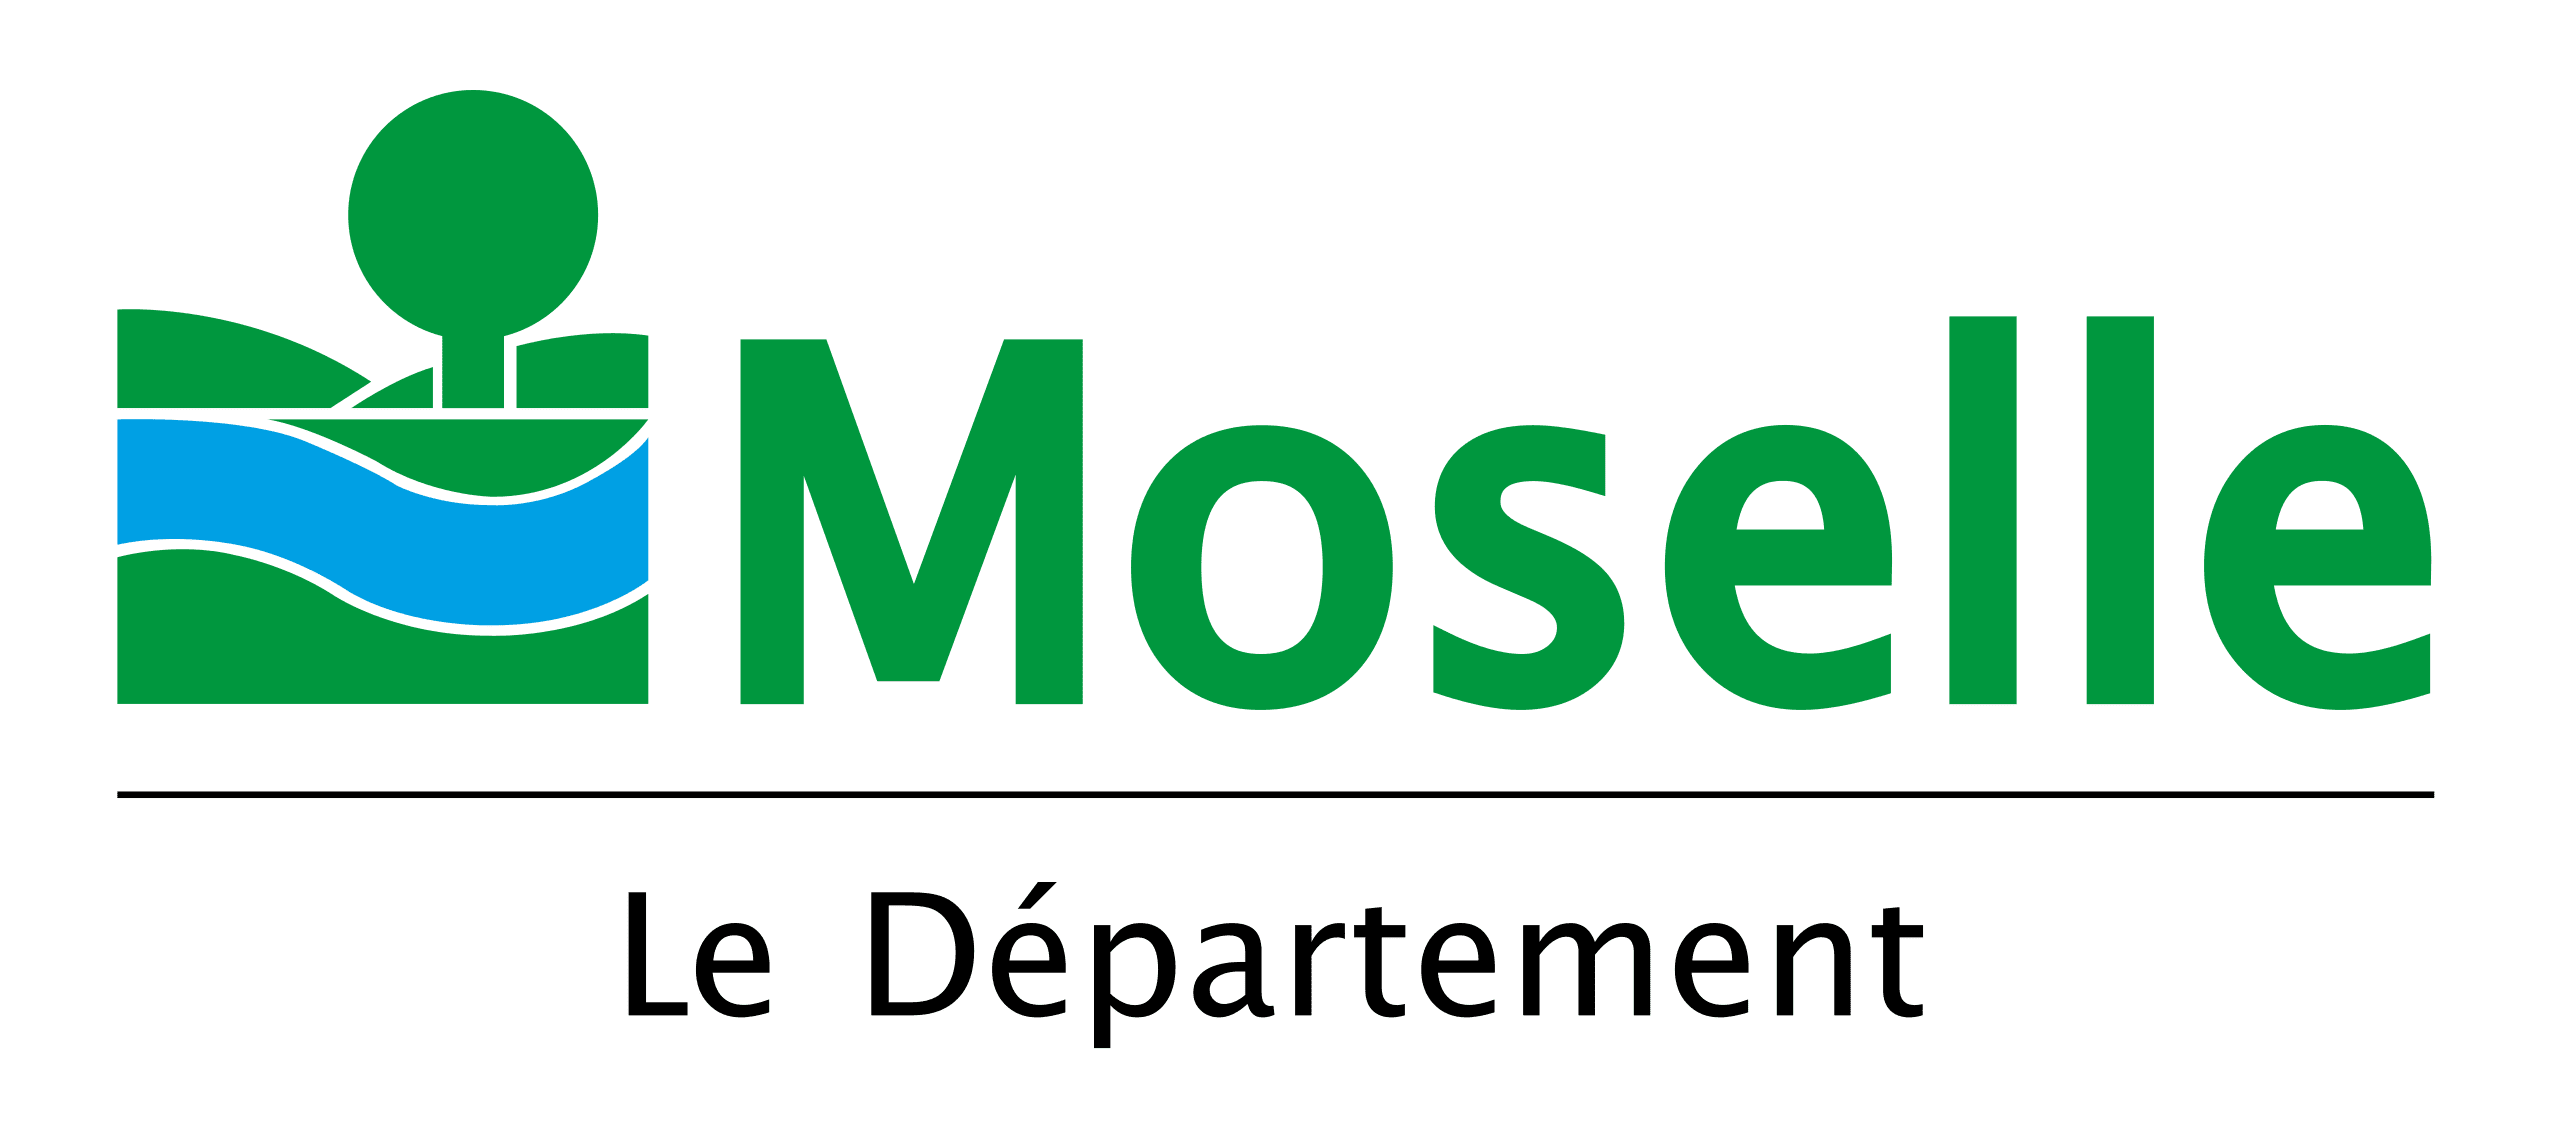 Département Moselle